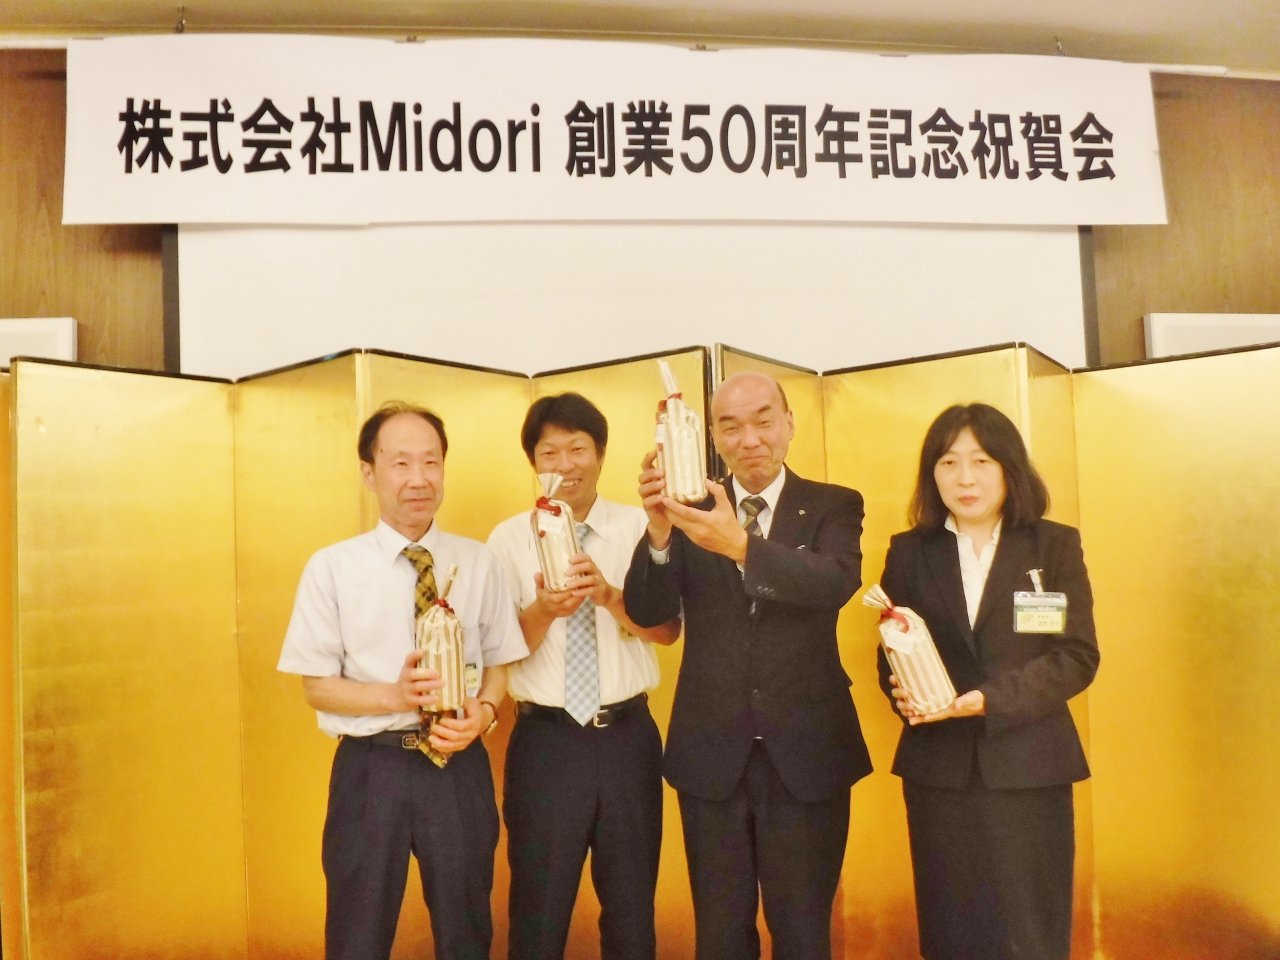 株式会社Midori創業50周年祝賀会